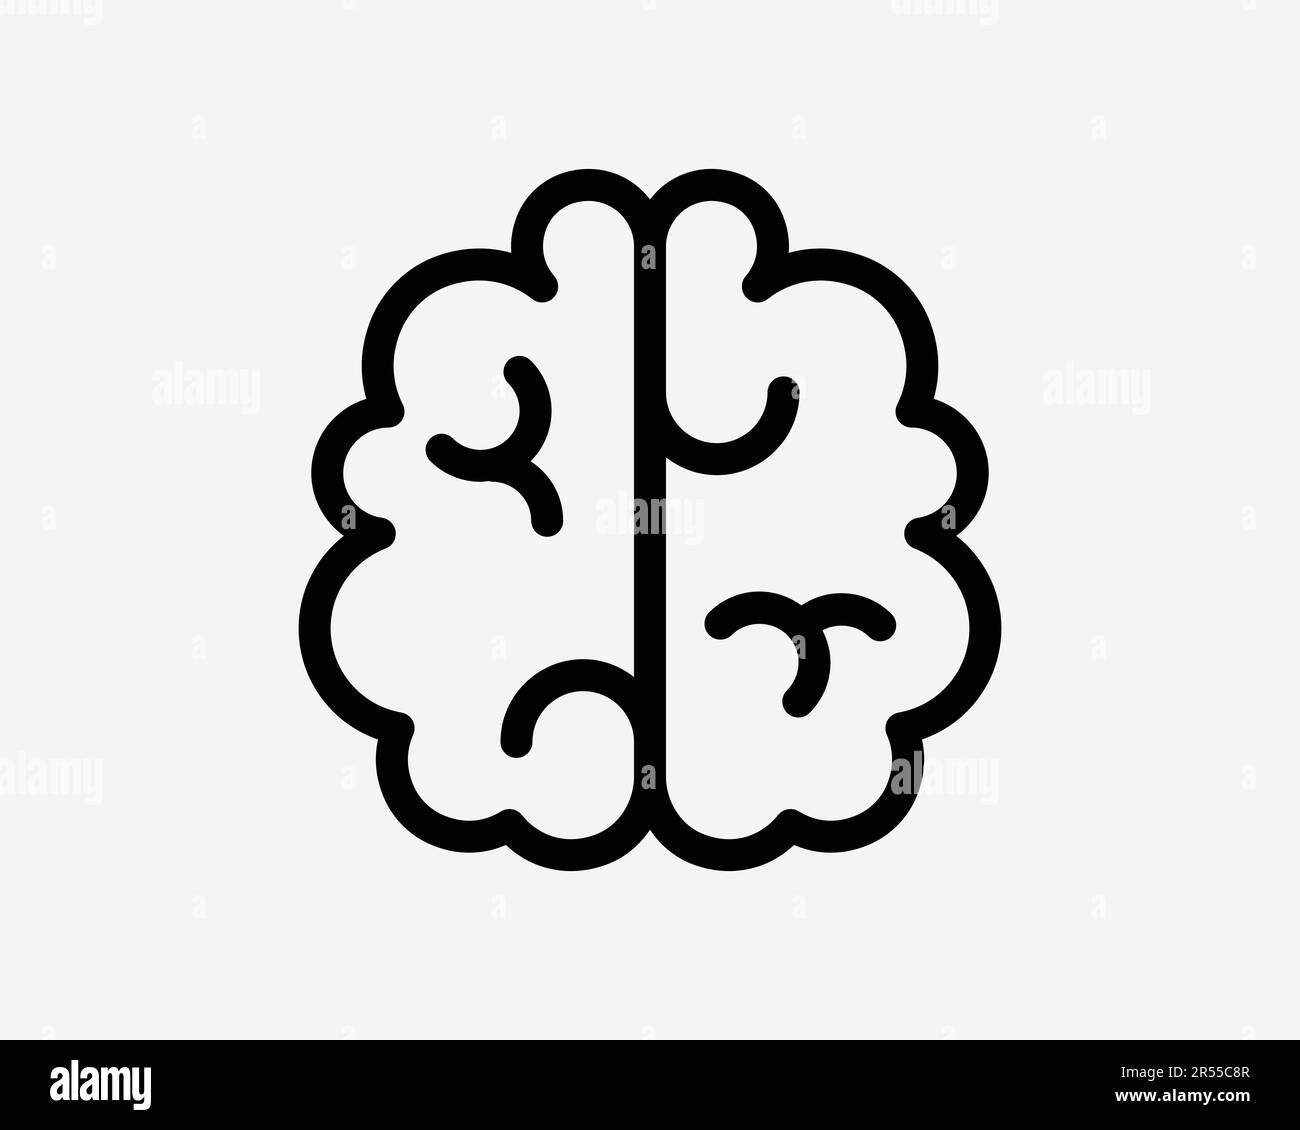 Symbol Für Gehirnlinie. Mensch Intelligenz Anatomie Organ Intellekt Neurologie Speicher AI-Zeichen-Symbol Schwarze Grafik Illustration Clipart EPS-Vektor Stock Vektor